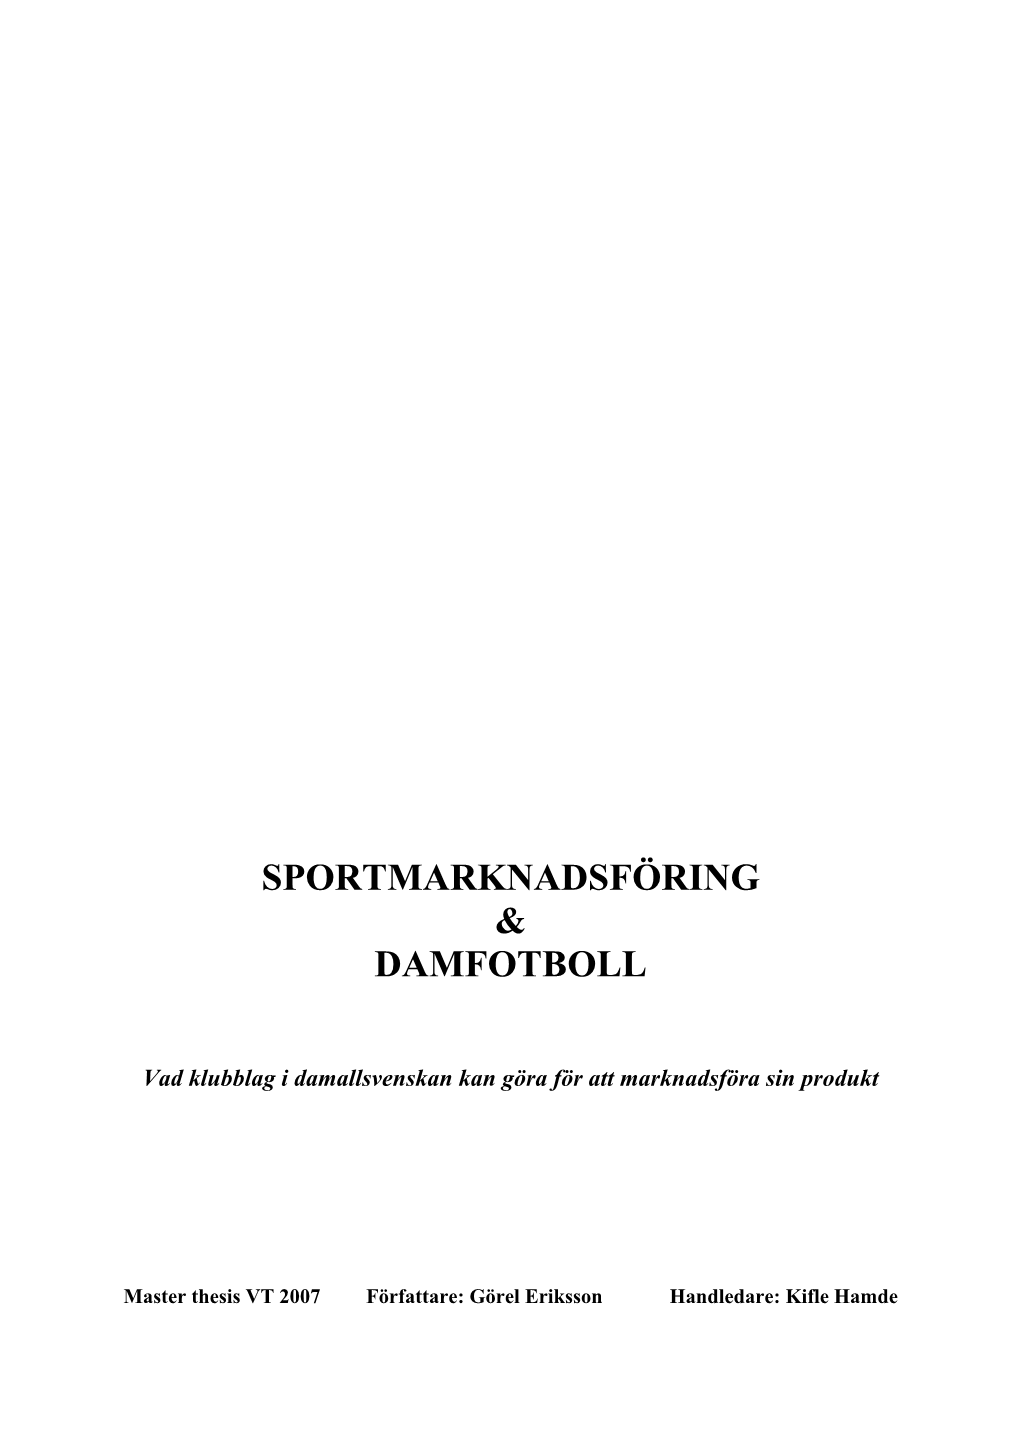 Sportmarknadsföring & Damfotboll